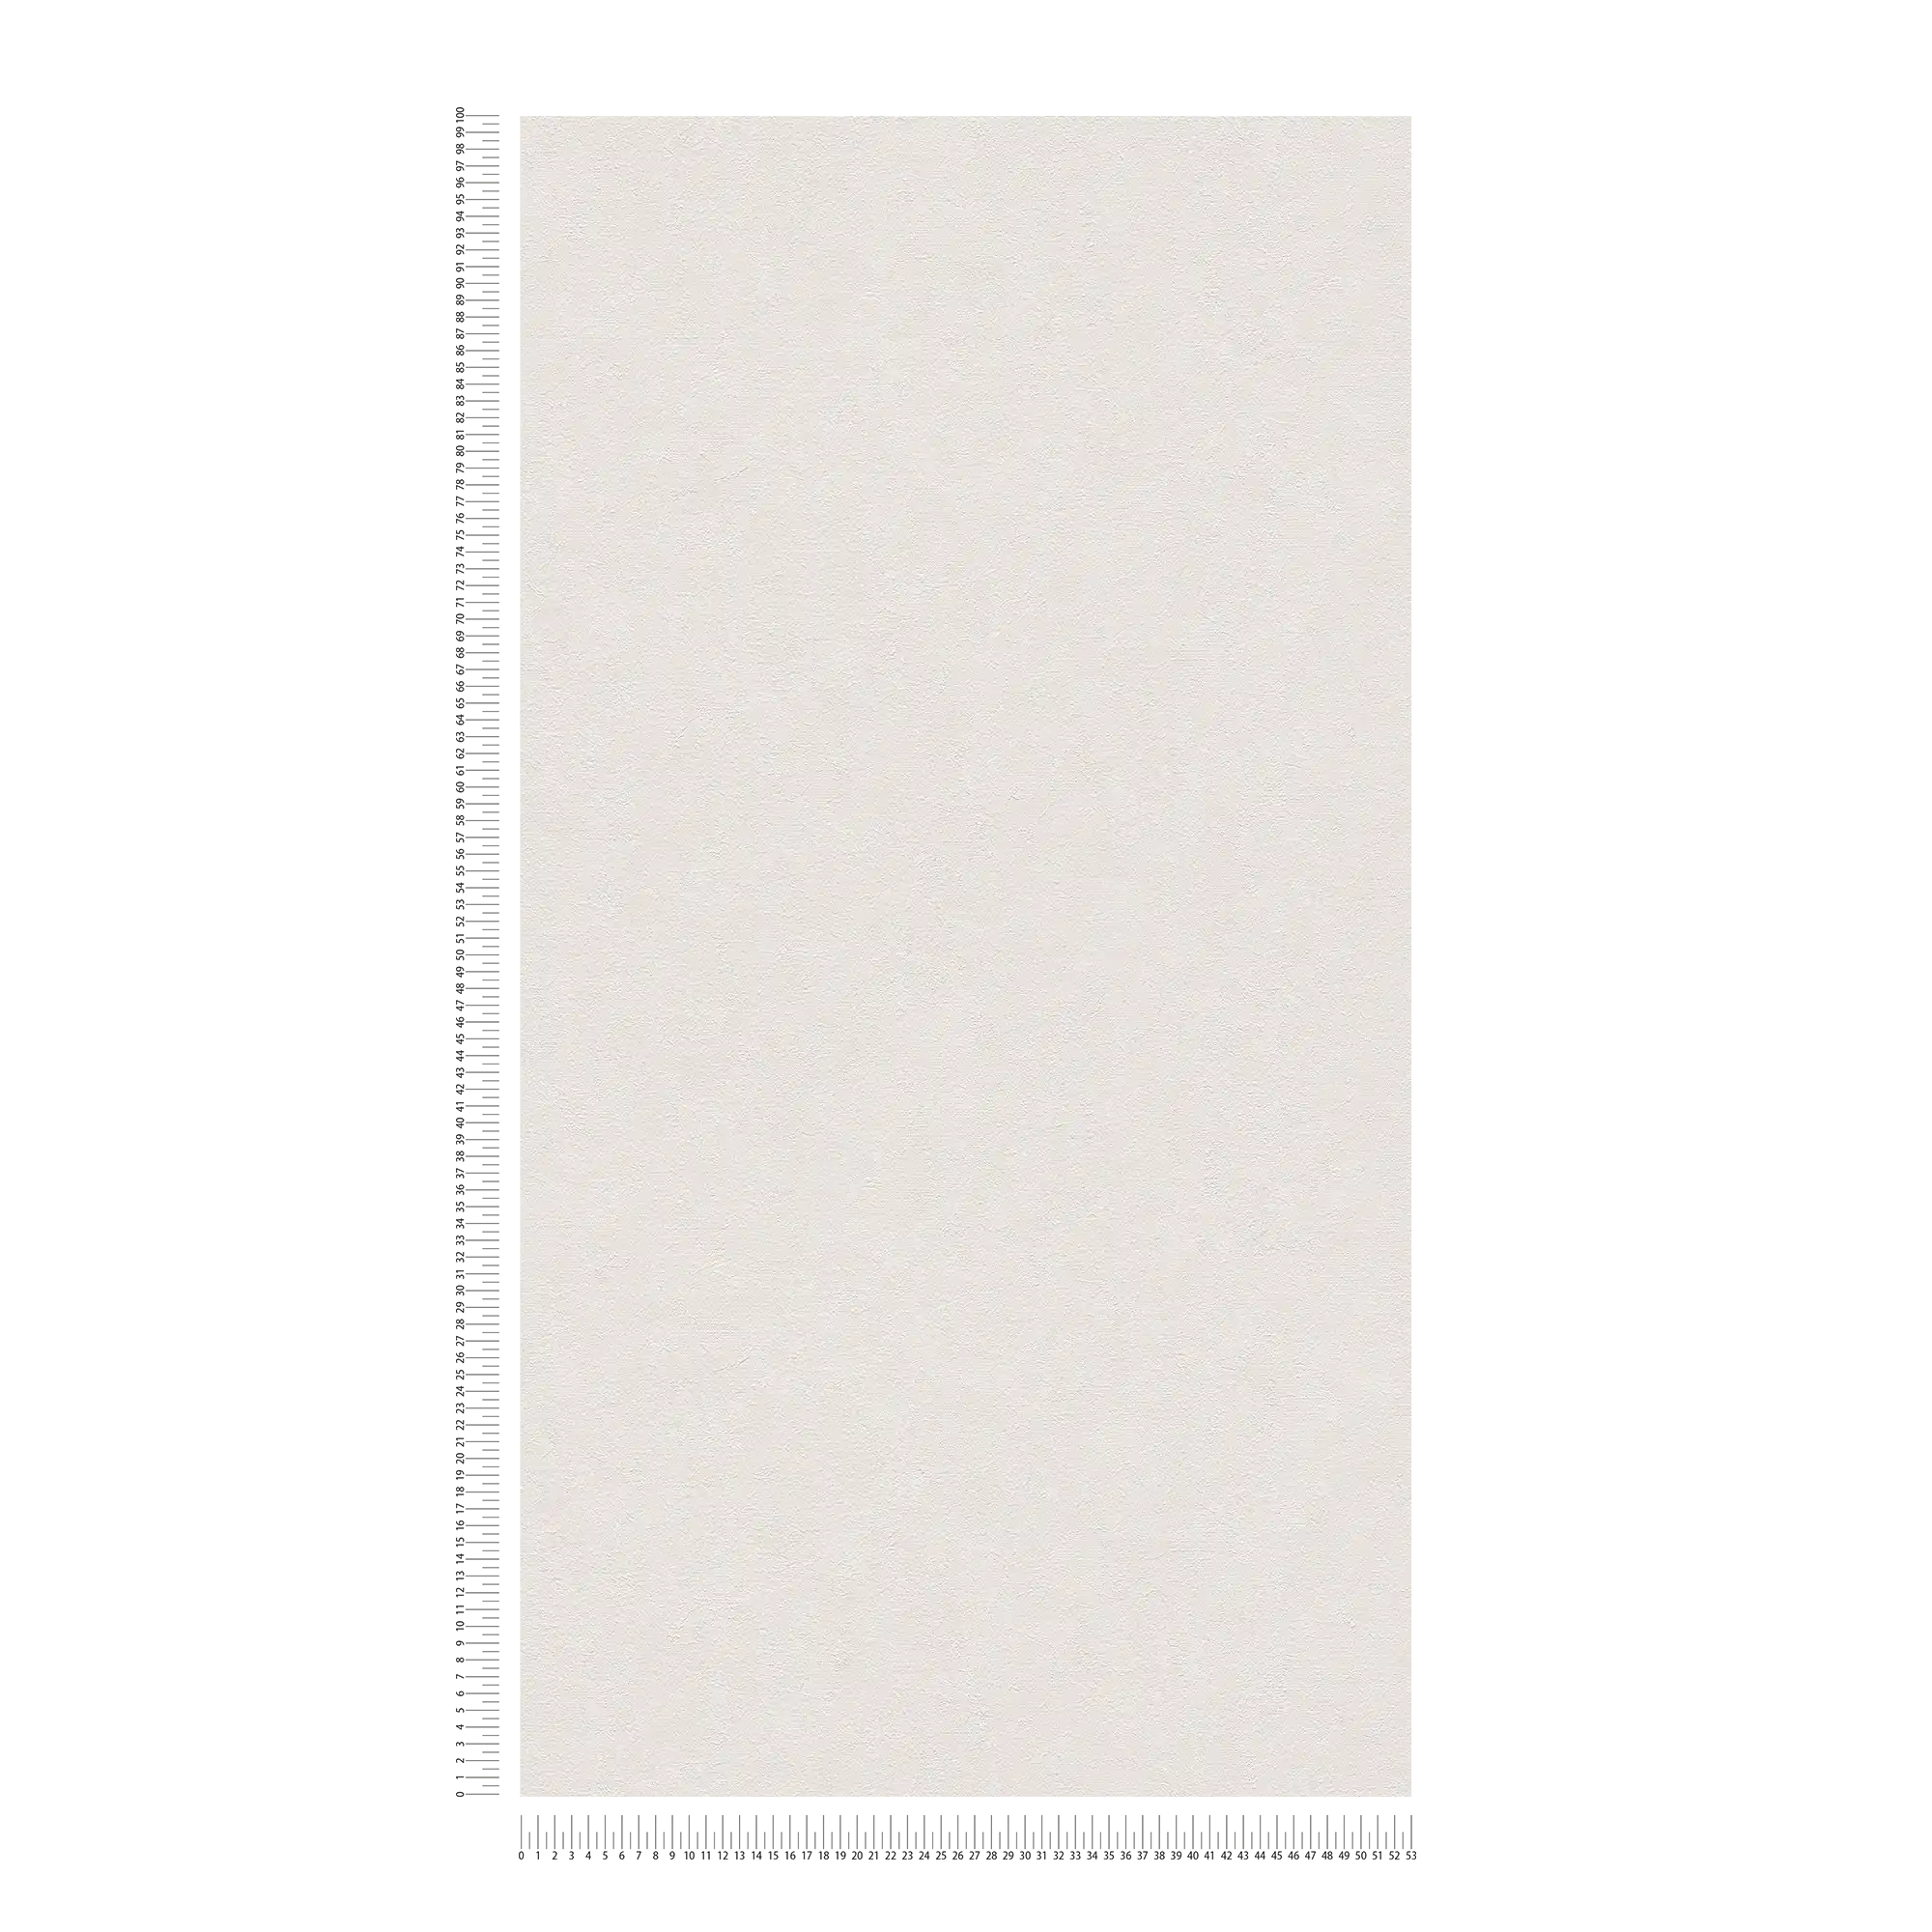             Carta da parati a tinta unita con aspetto intonaco e tratteggio a colori - crema, bianco
        